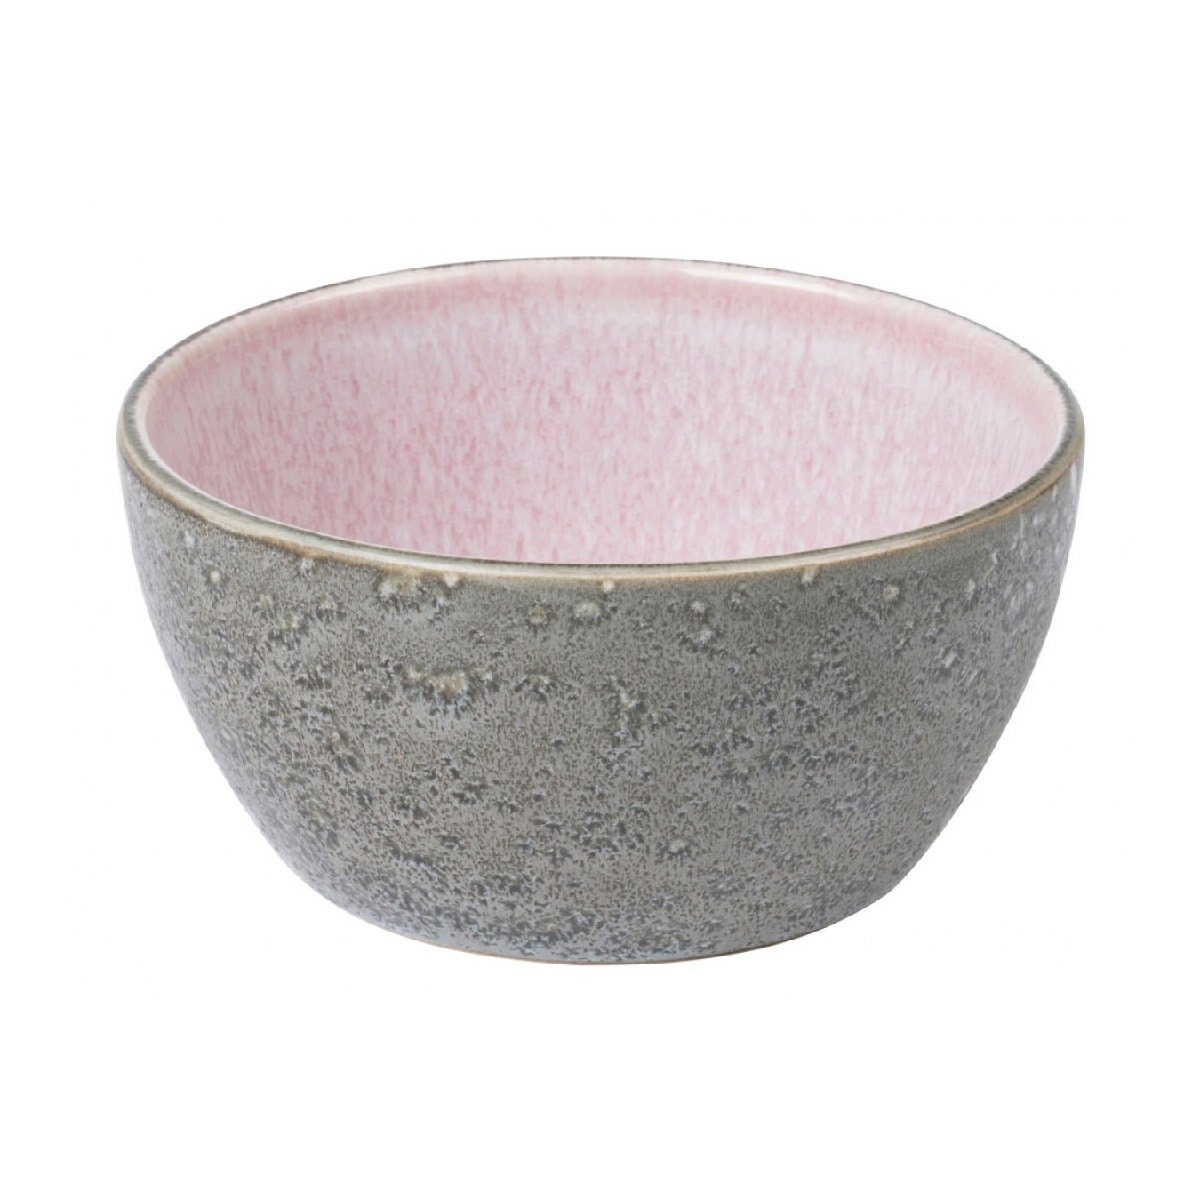 Bitz Schüssel Gastro grey / light pink, Steinzeug, d: 12 cm / h: 6 cm grau/rosa